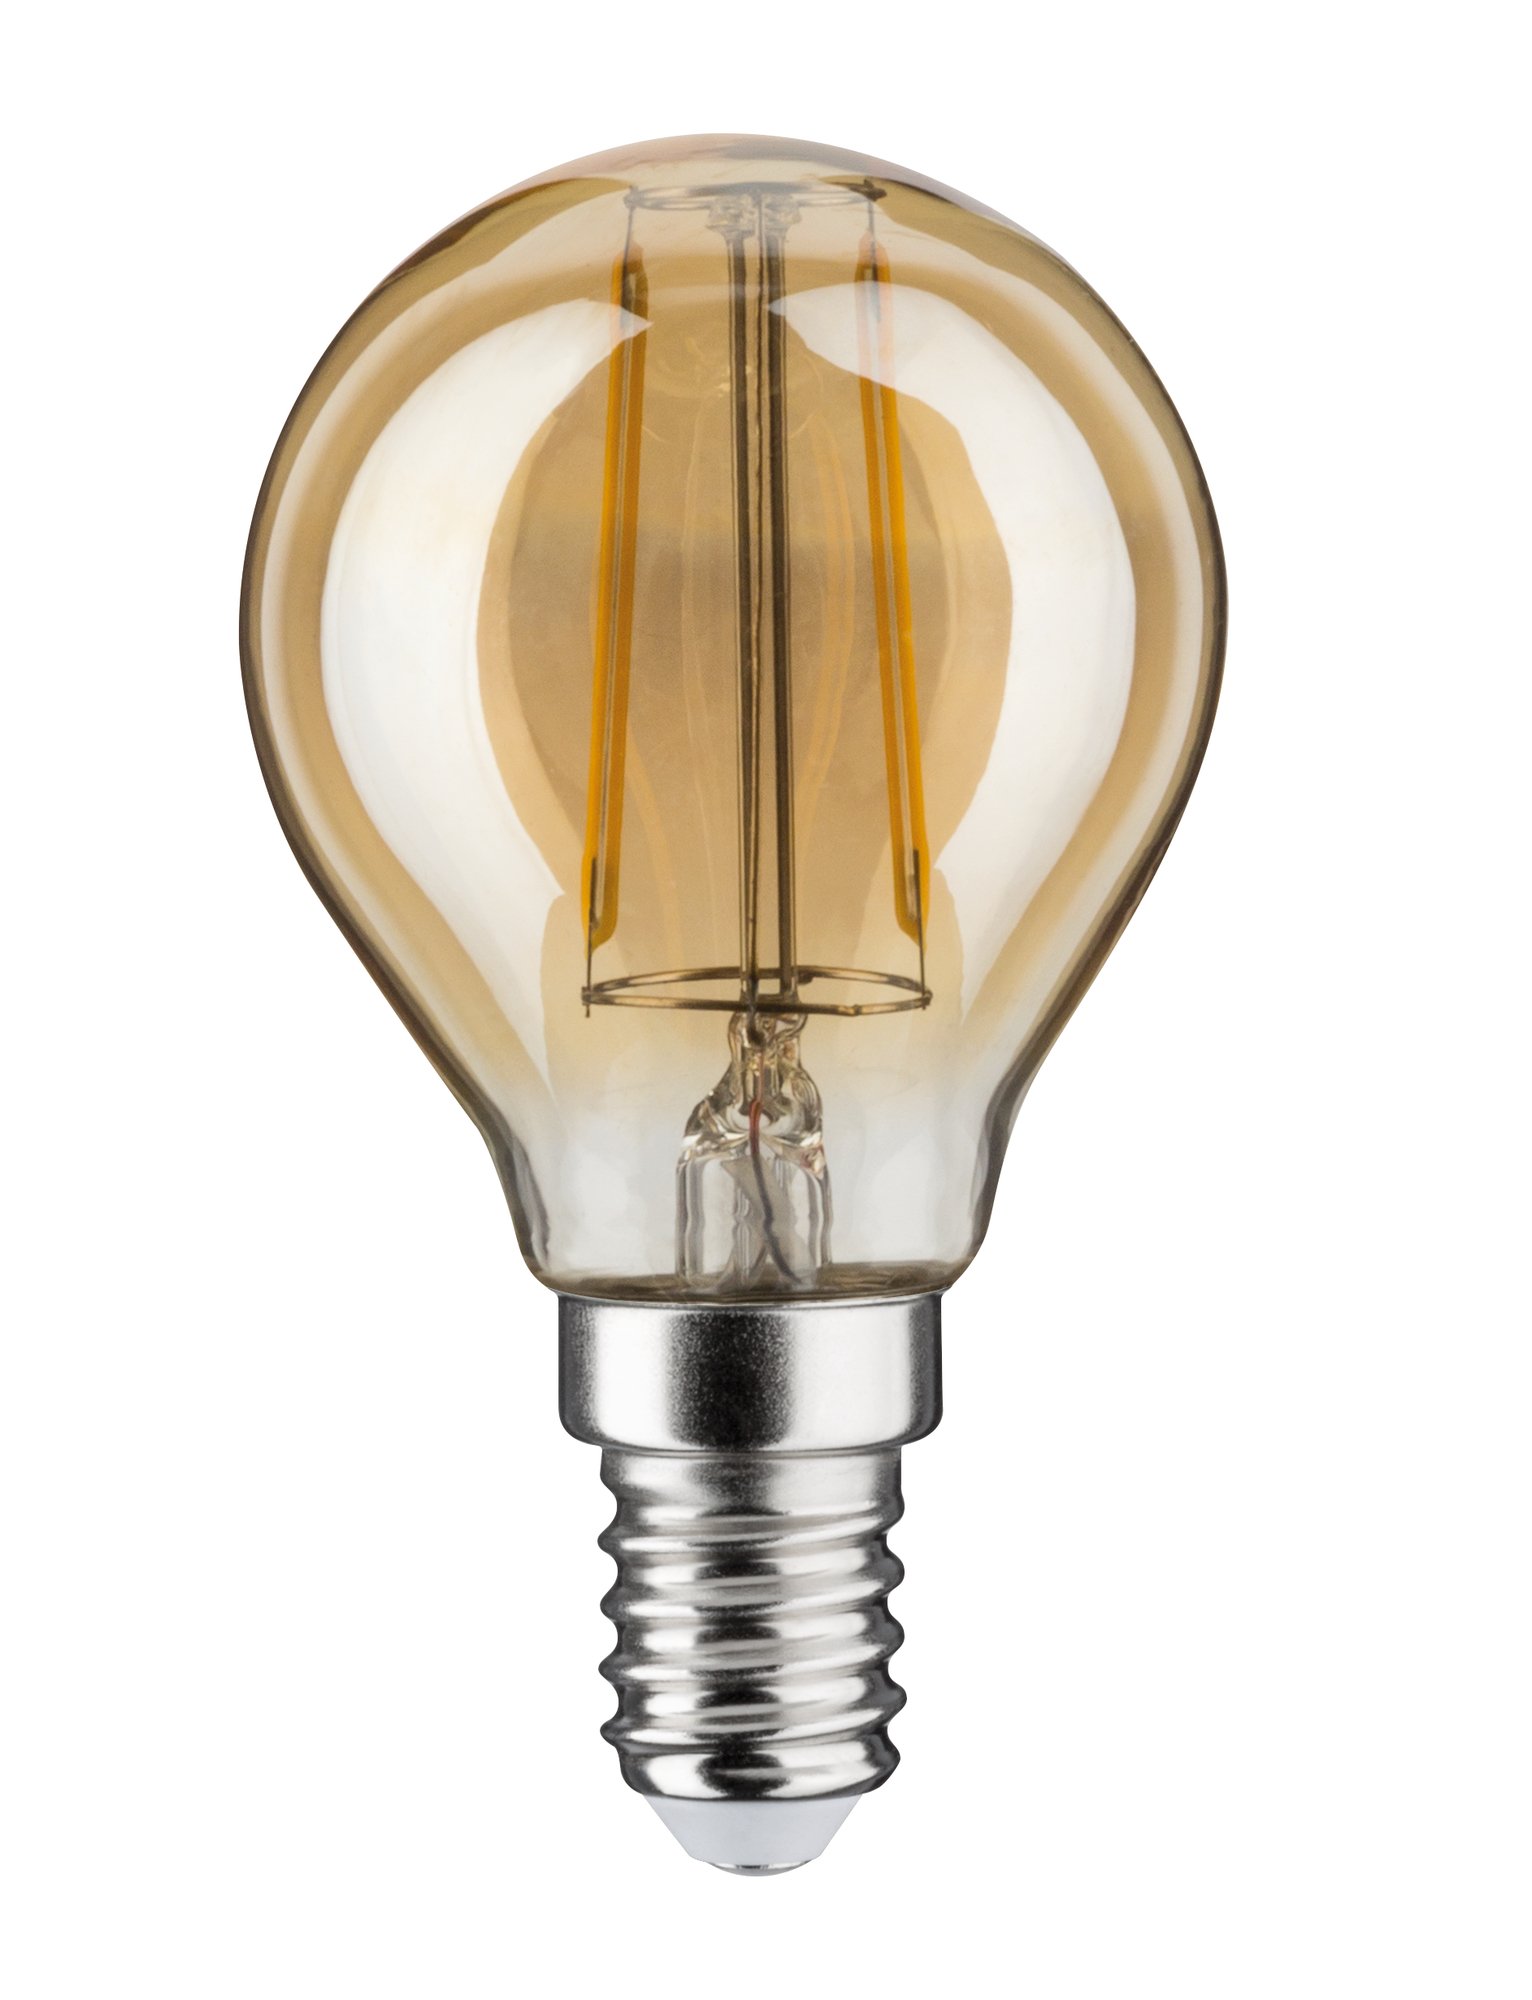 1879 Filament 230V LED Tropfen E14 160lm 2W 1700K Gold